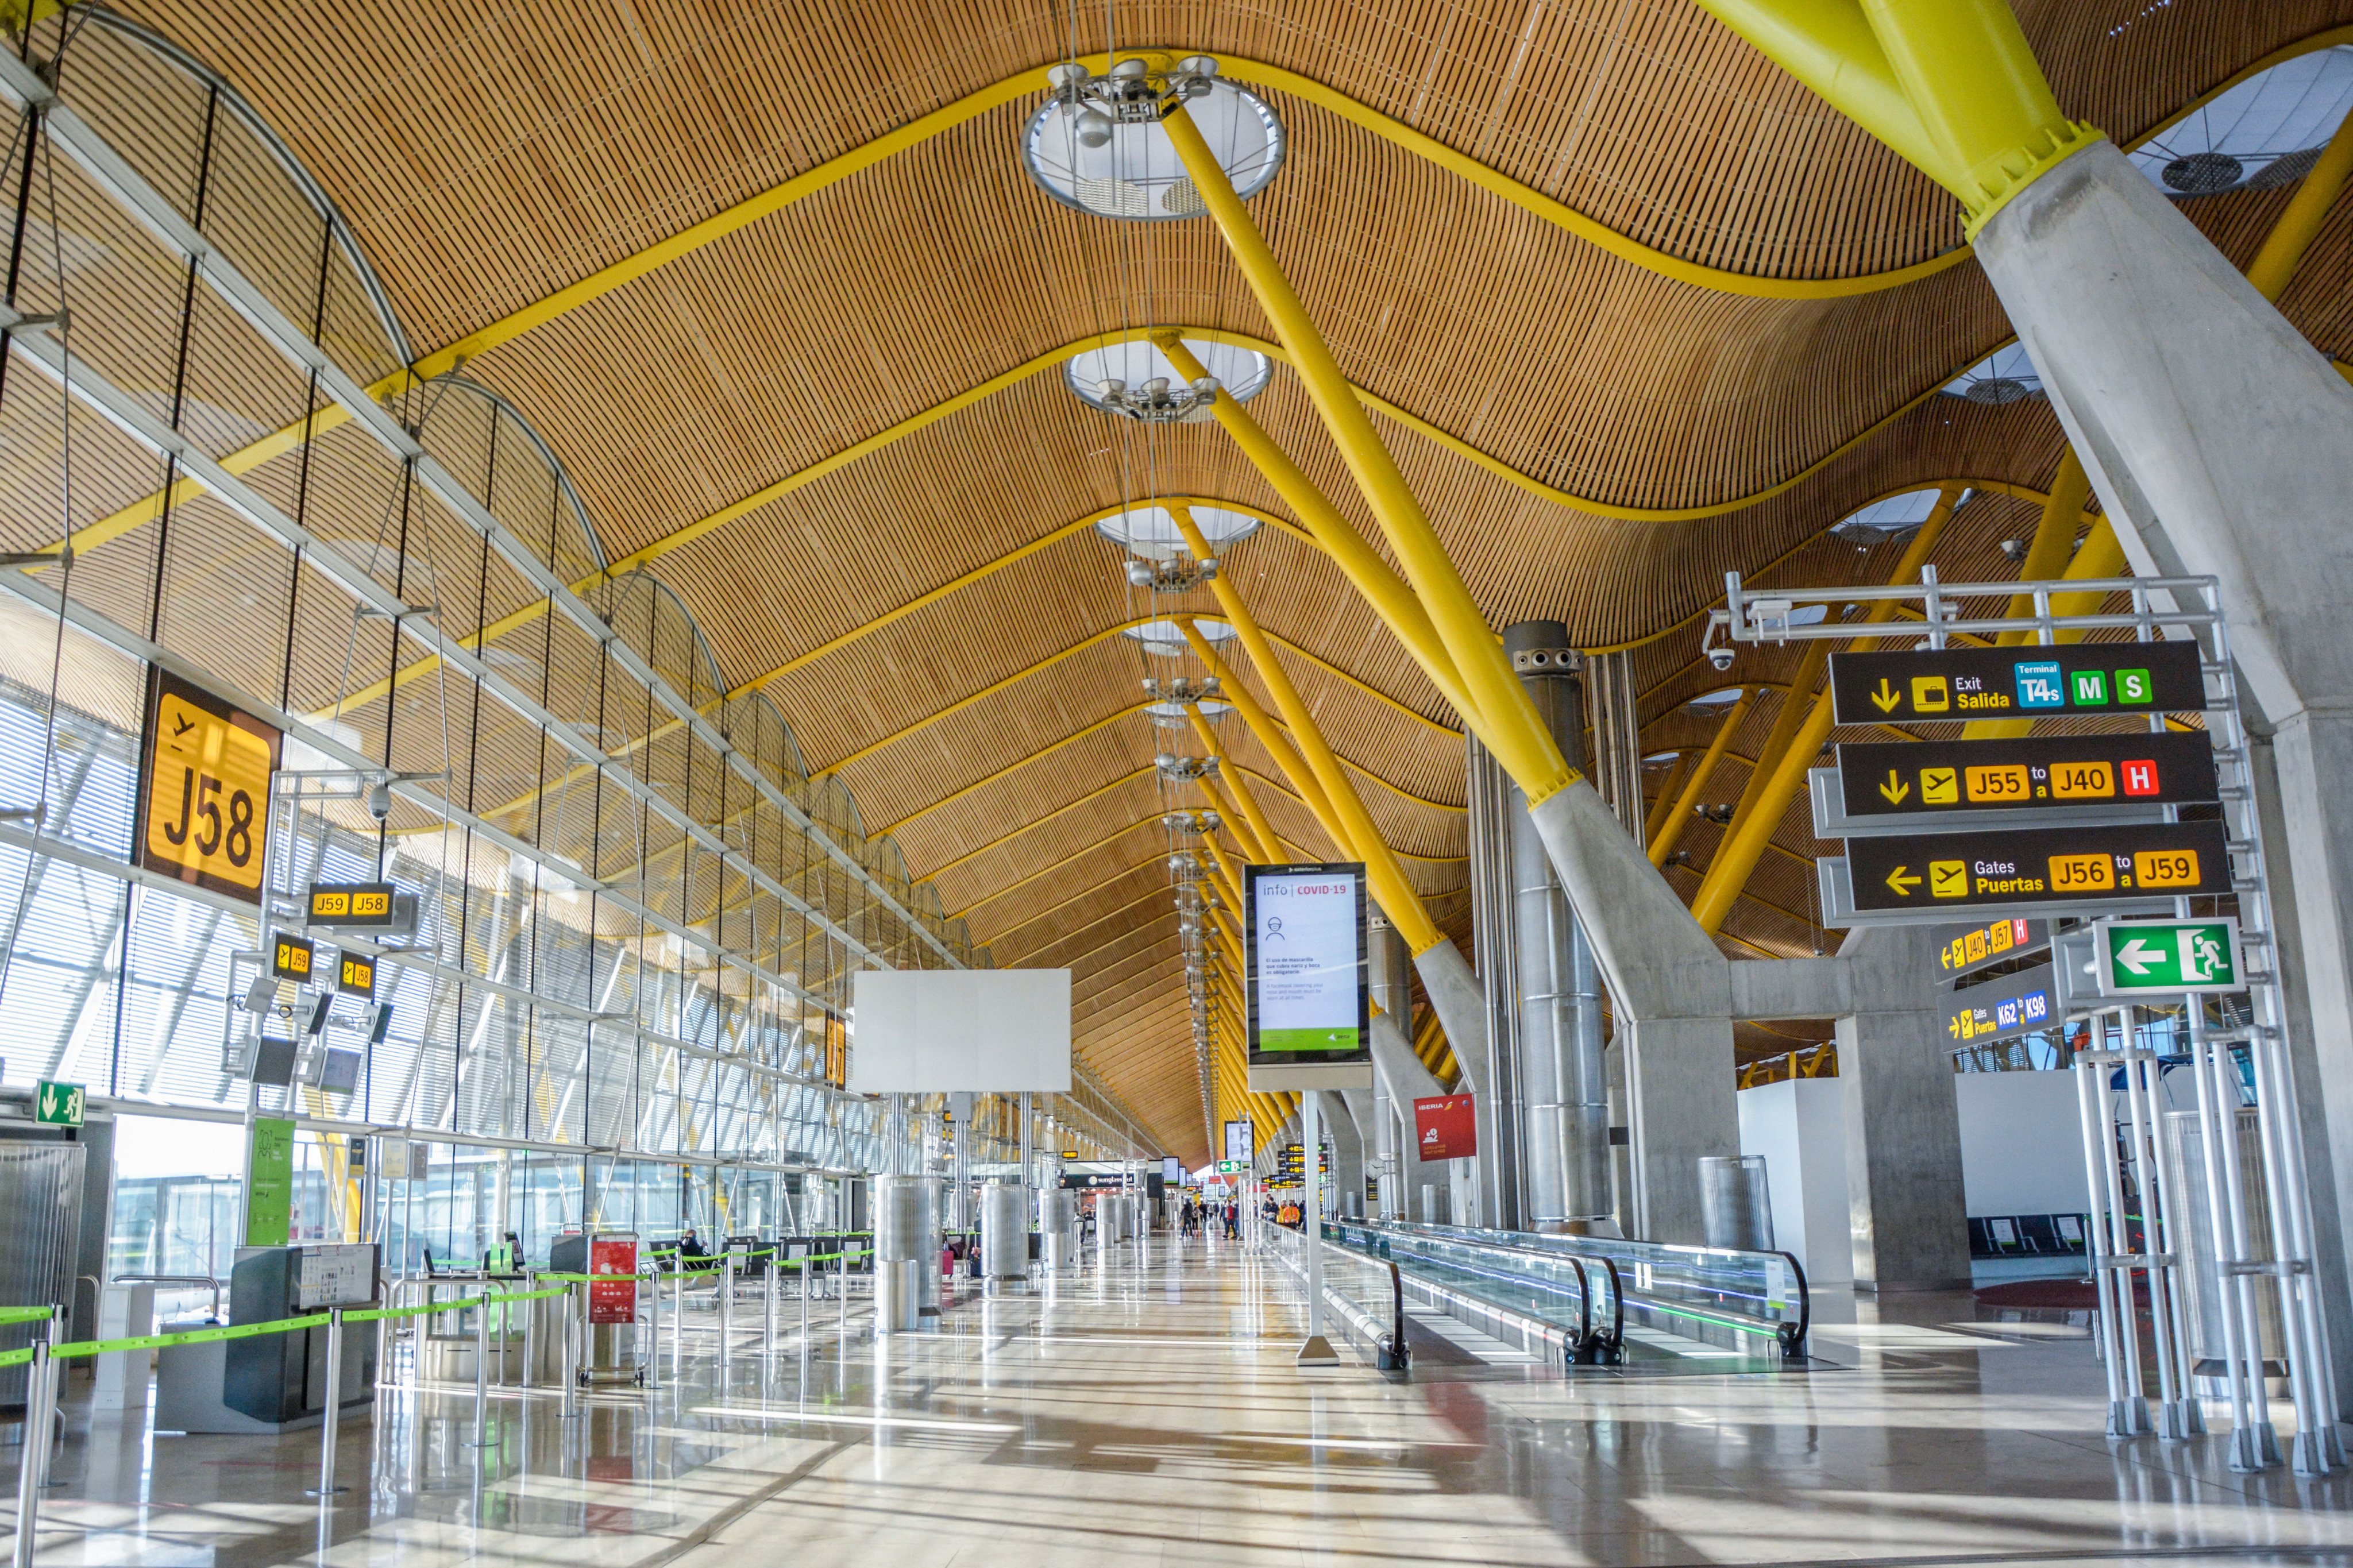 Terminal 4 of the Adolfo Suárez MadridBarajas Airport